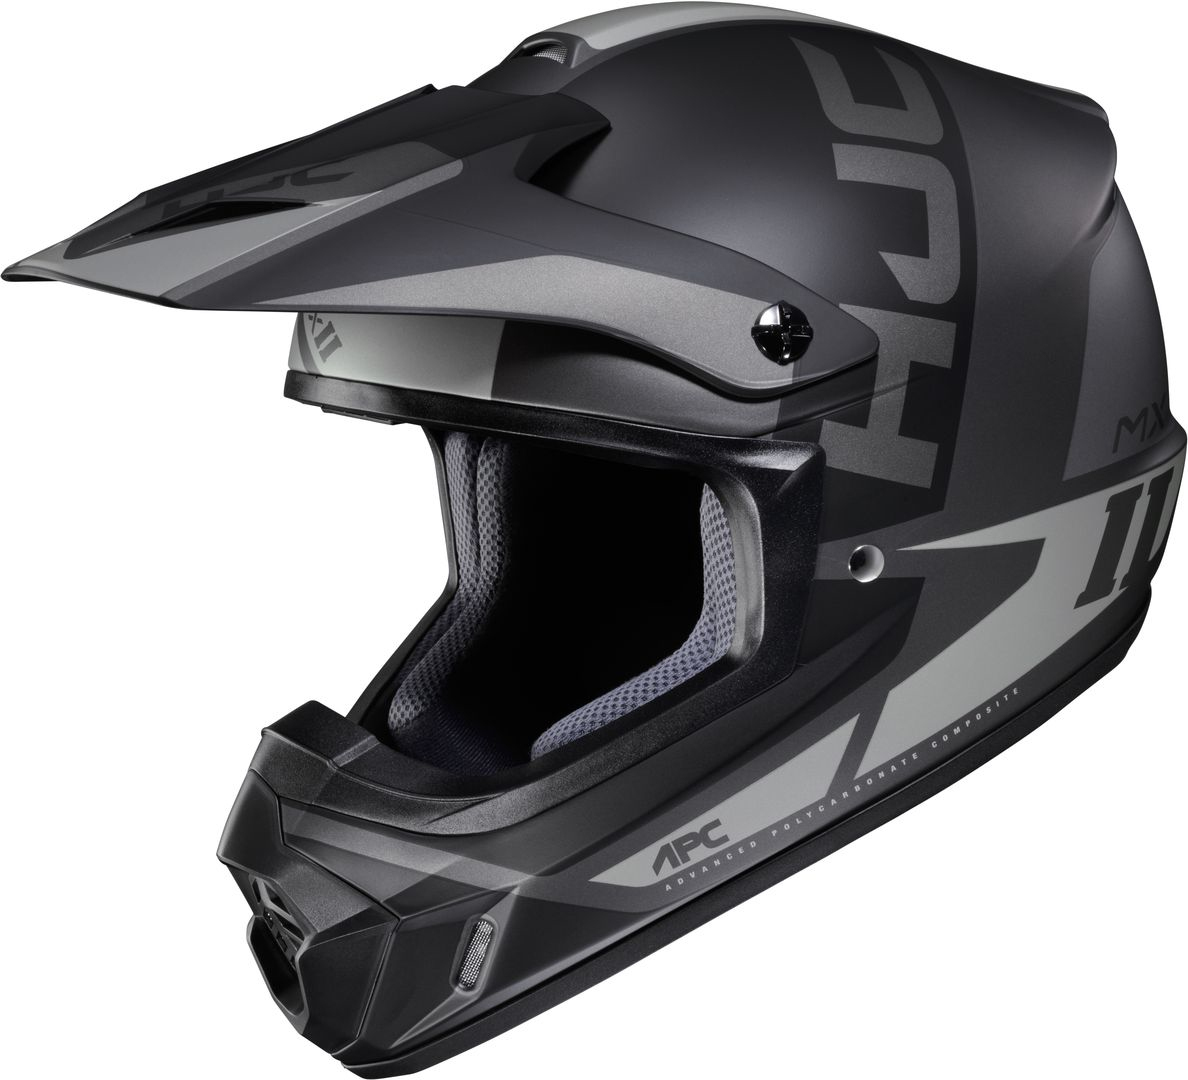 HJC CS-MX II Creed Motocross Helmet, black-grey, Size XS, black-grey, Size XS